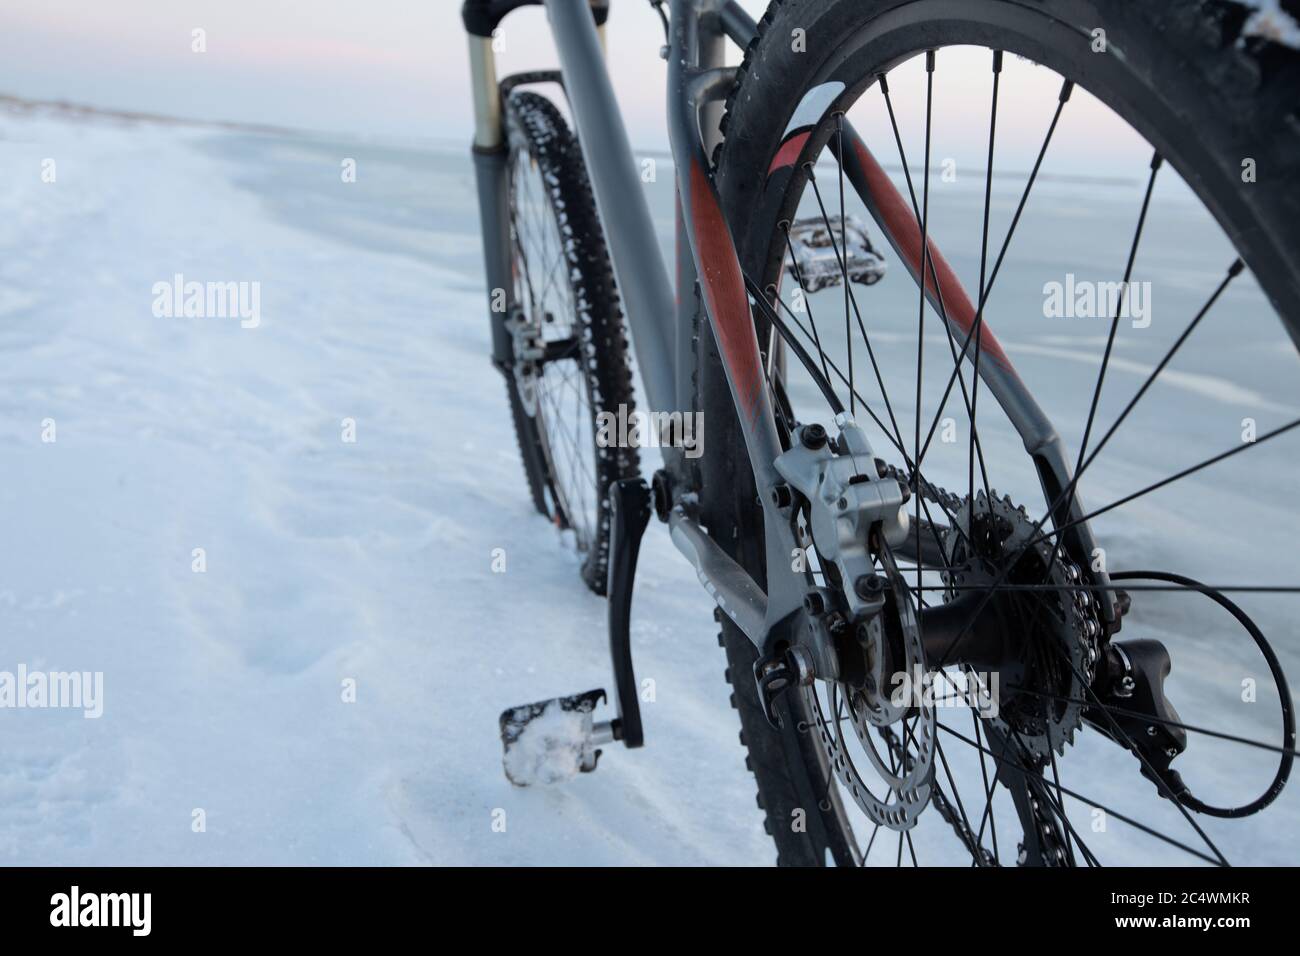 Mountain bike soggiorno nella neve vicino al mare ghiacciato o lago. Dettaglio del meccanismo di cambio marcia e delle rotture del disco. Sfruttamento e manutenzione delle biciclette invernali. Con borchie Foto Stock